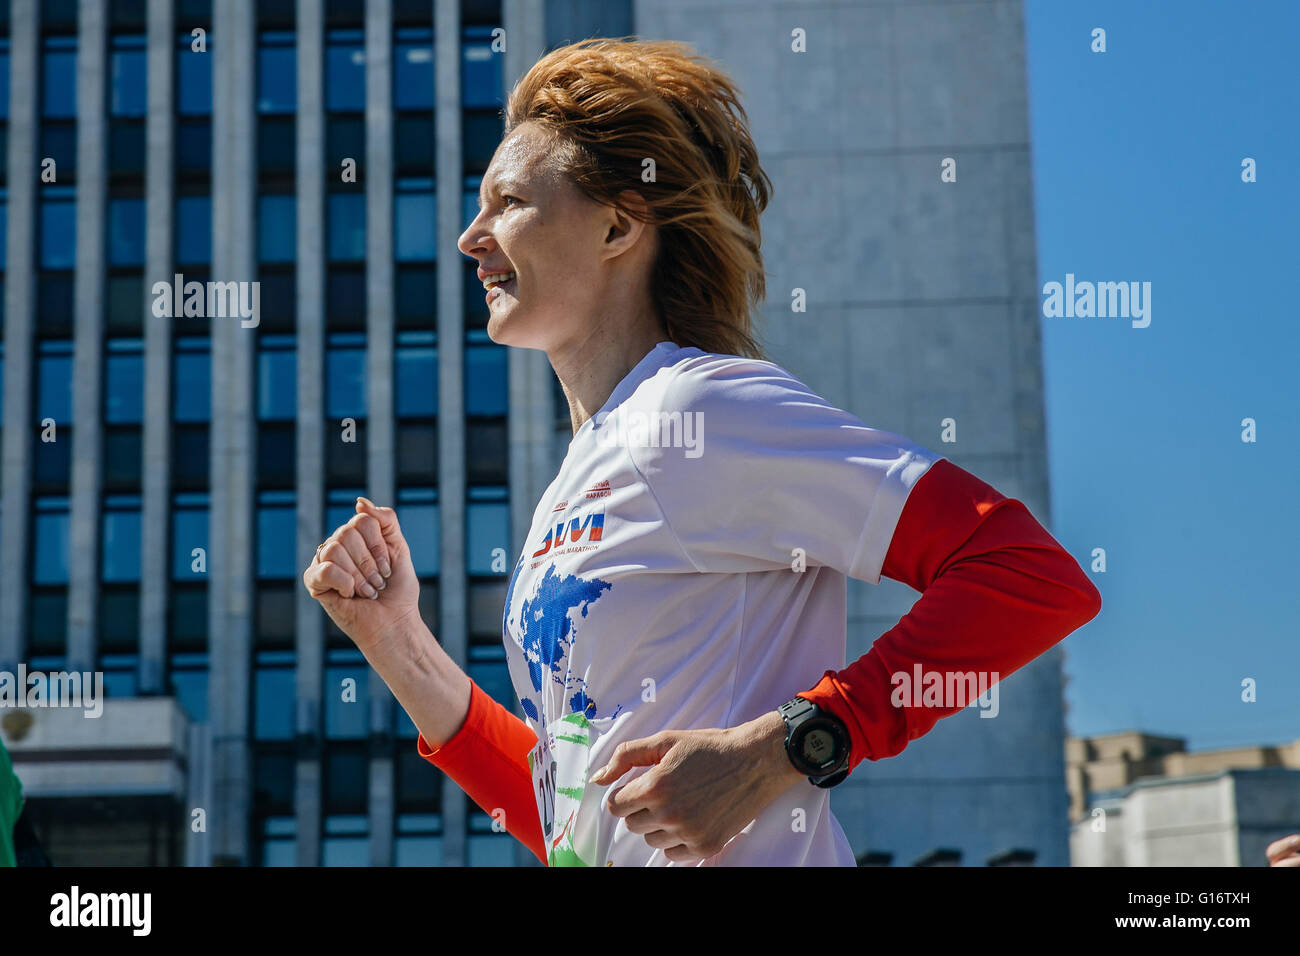 Mujer joven corre a través de la ciudad, una sonrisa en su cara durante el maratón de la ciudad de Foto de stock